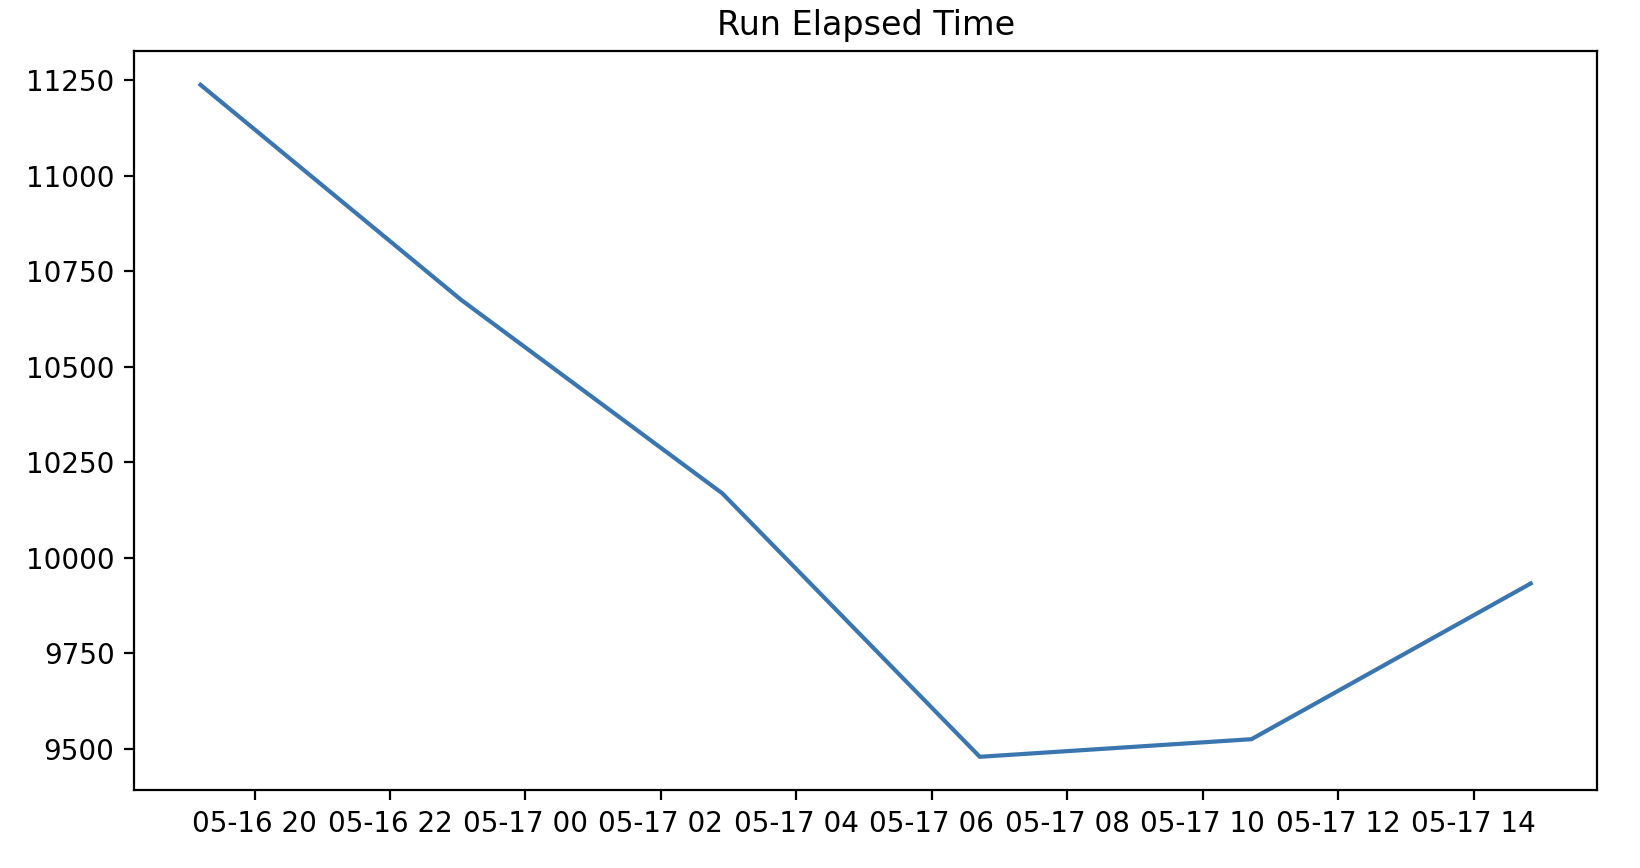 The plot of runElapsedTime over time